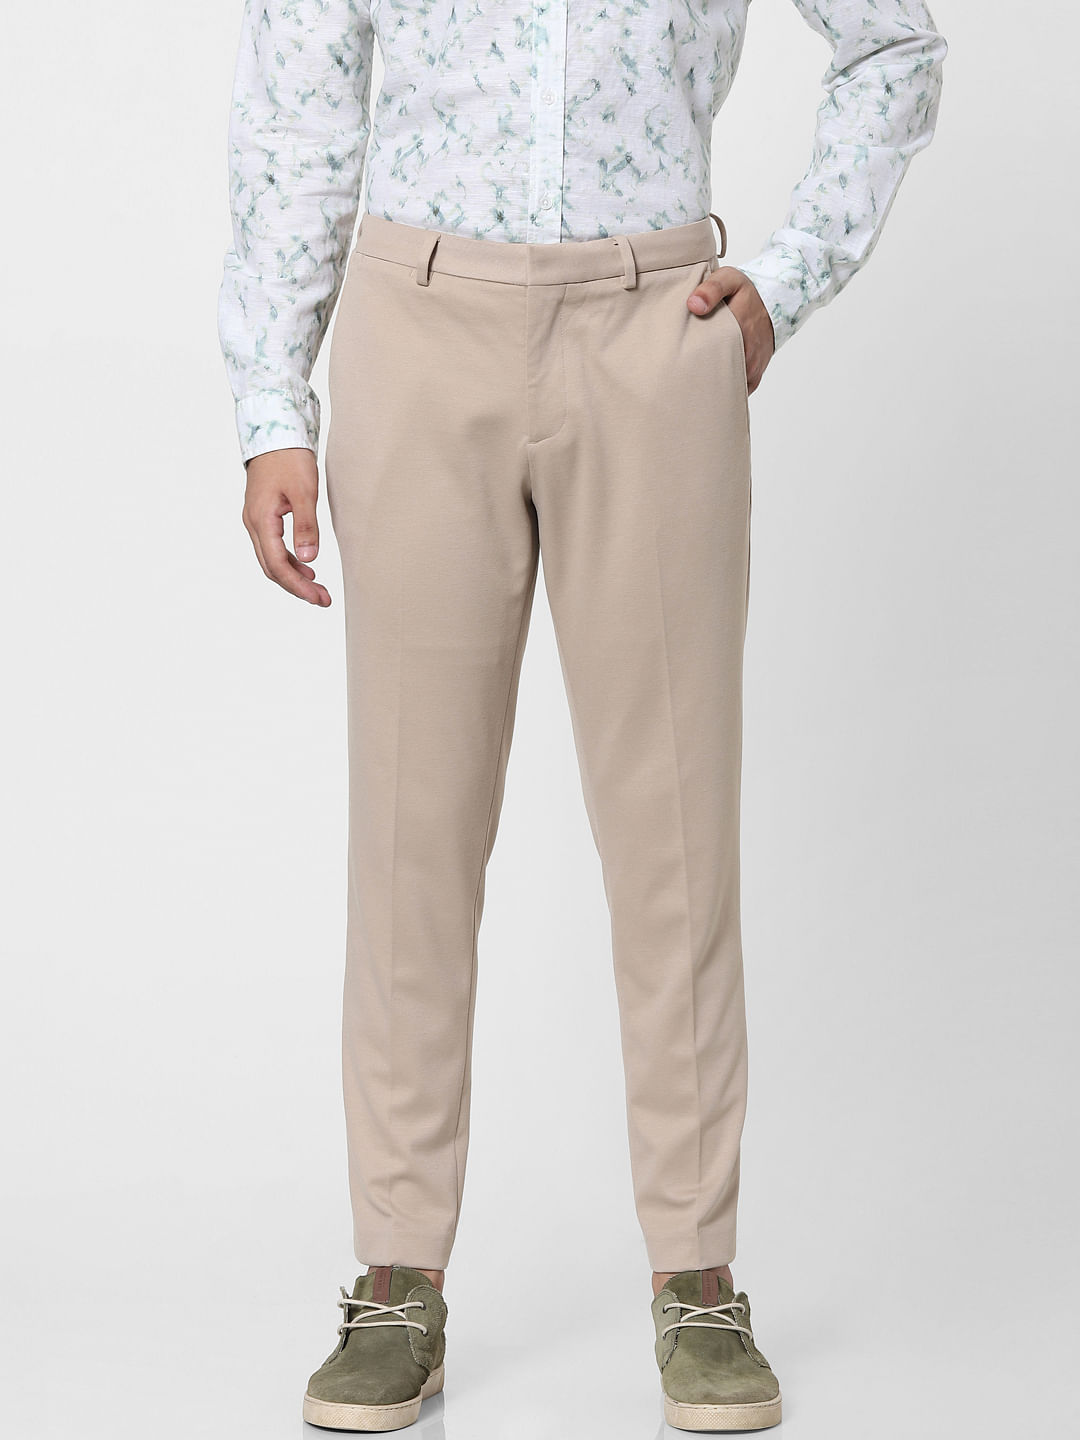 Buy Shotarr Slim Fit Beige Formal Pant for Men  Polyester Viscose Formal  Trouser for Gents  Office Formal Trouser for Men  Boys Work Utility Pants  at Amazonin